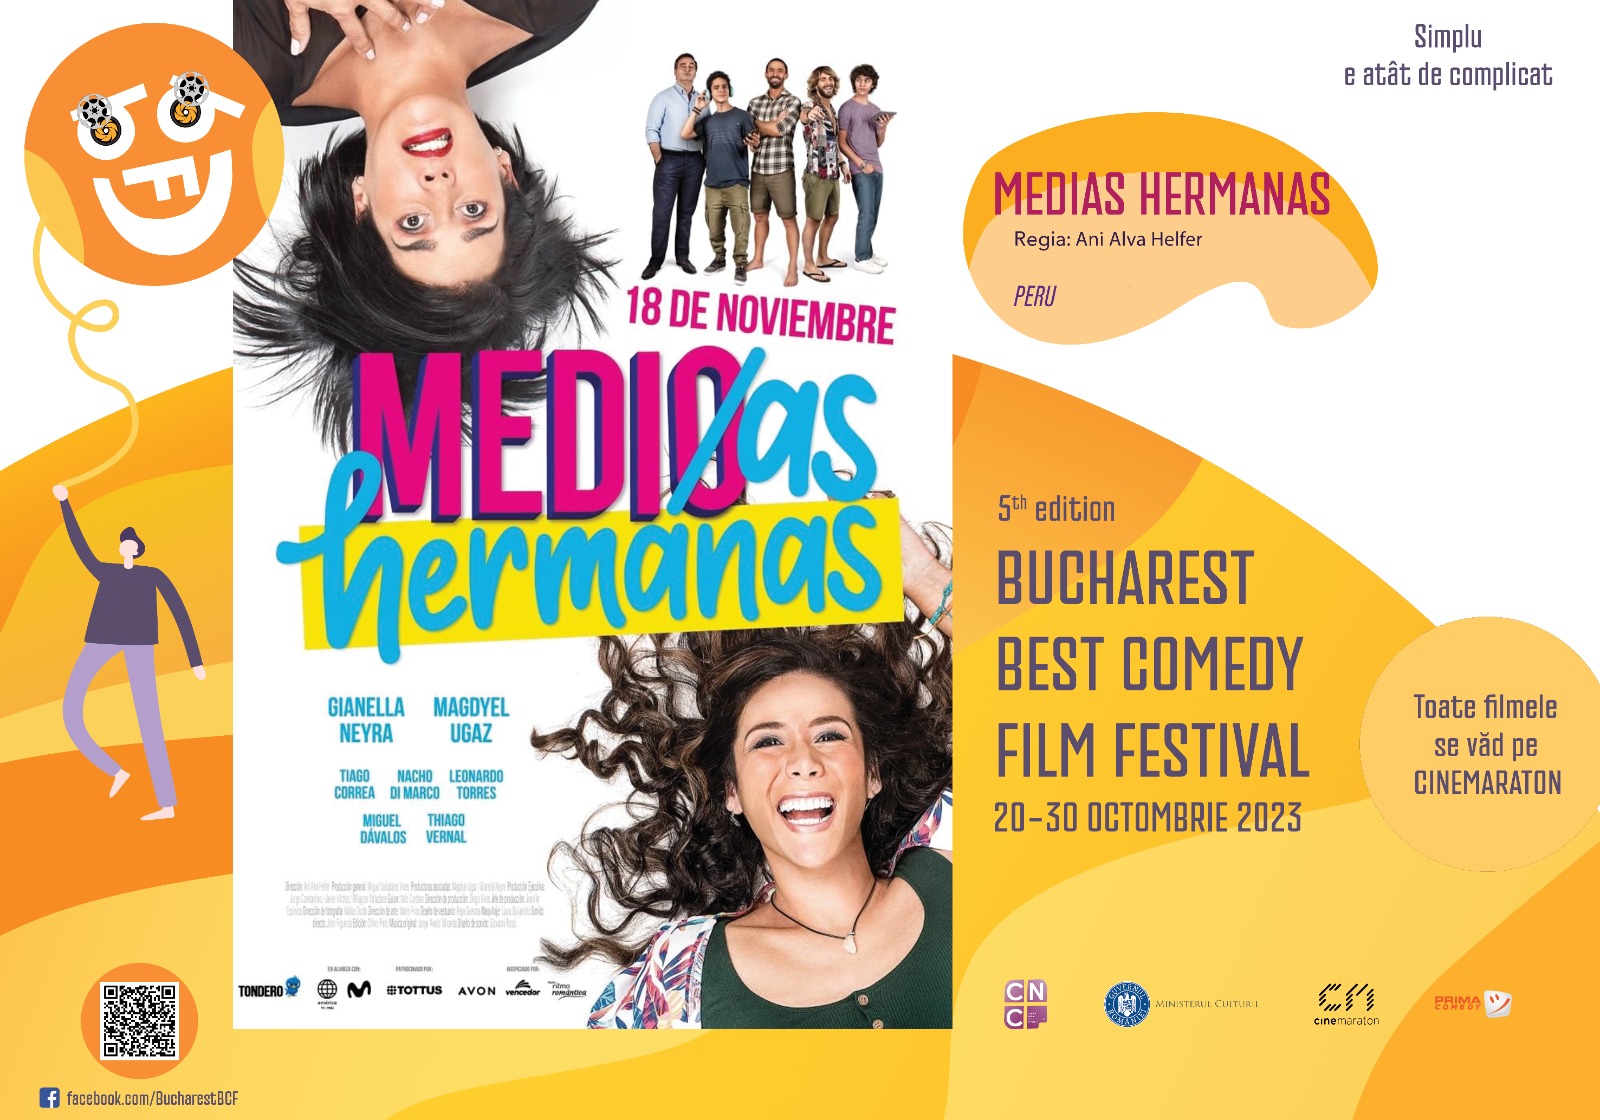 Medias Hermanas (Peru, 2021)